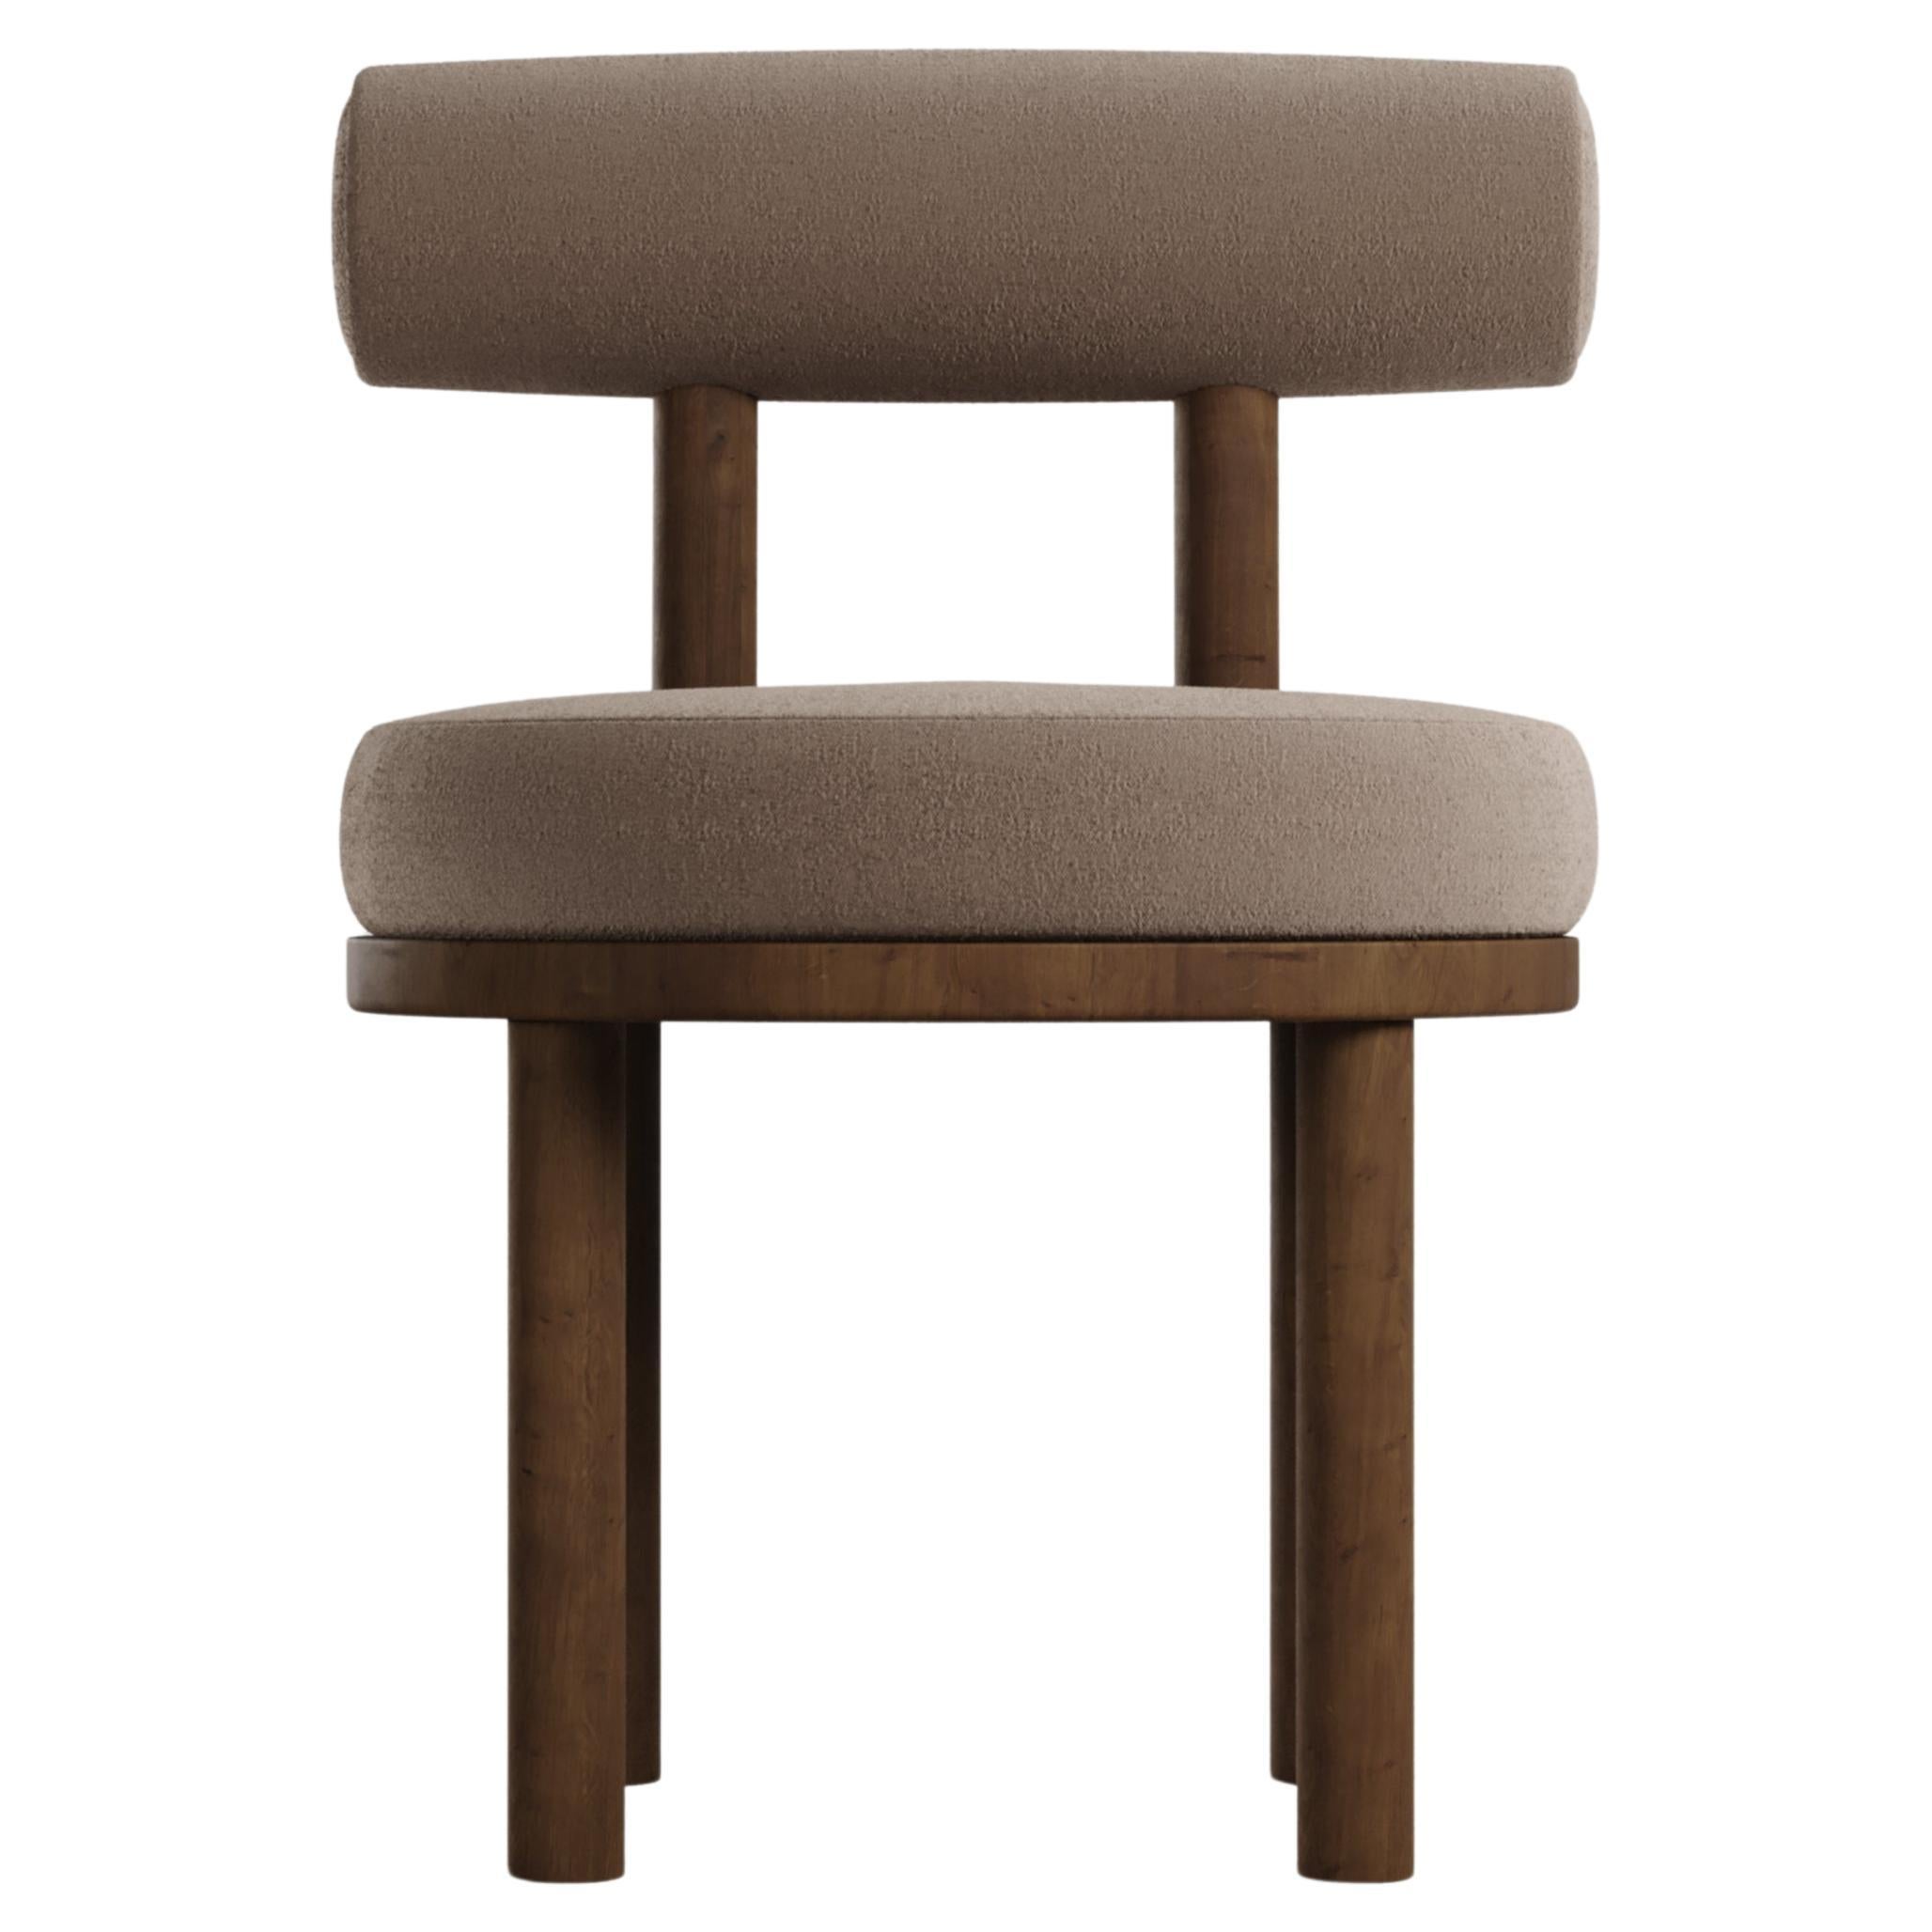 Moderner Moca-Stuhl aus brauner und rauchfarbener Eiche im Boucle-Stil, hergestellt in Portugal von Sammler